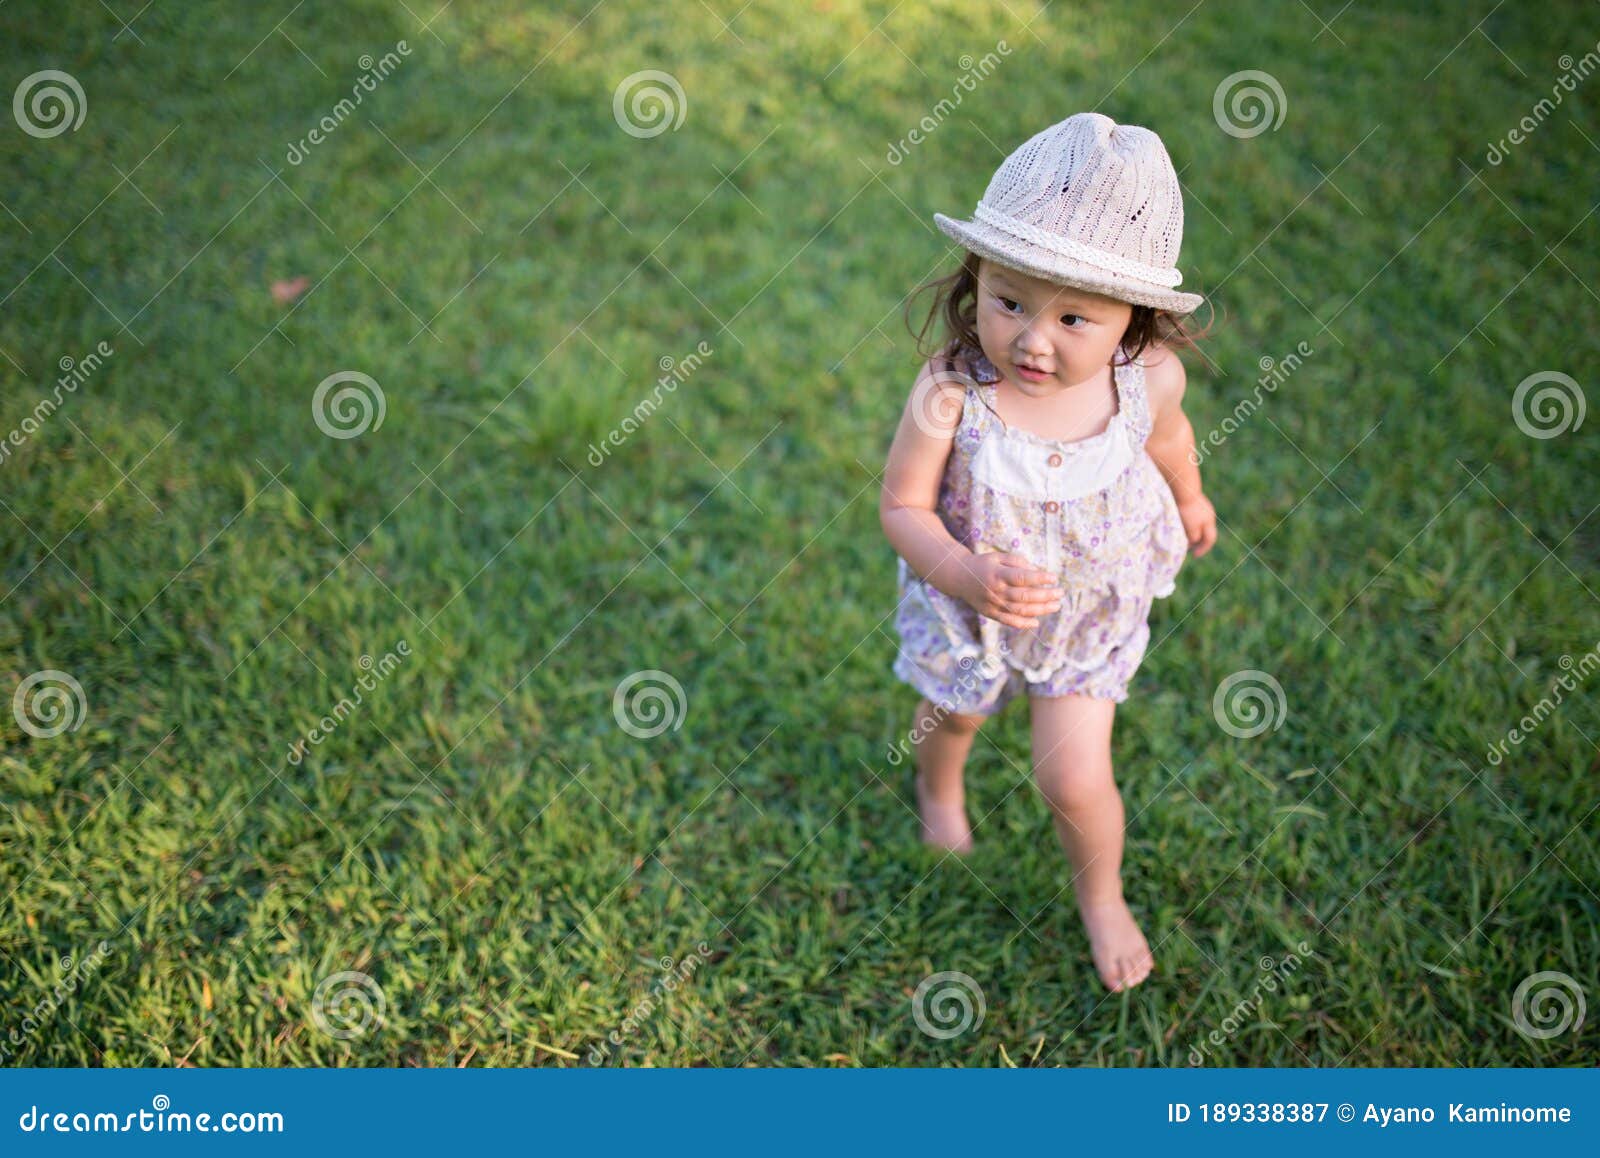 夕阳大地上，小女孩赤脚露在草地上 库存图片. 图片 包括有 作用, 假期, 本质, 女孩, 享用, 逗人喜爱 - 161965329